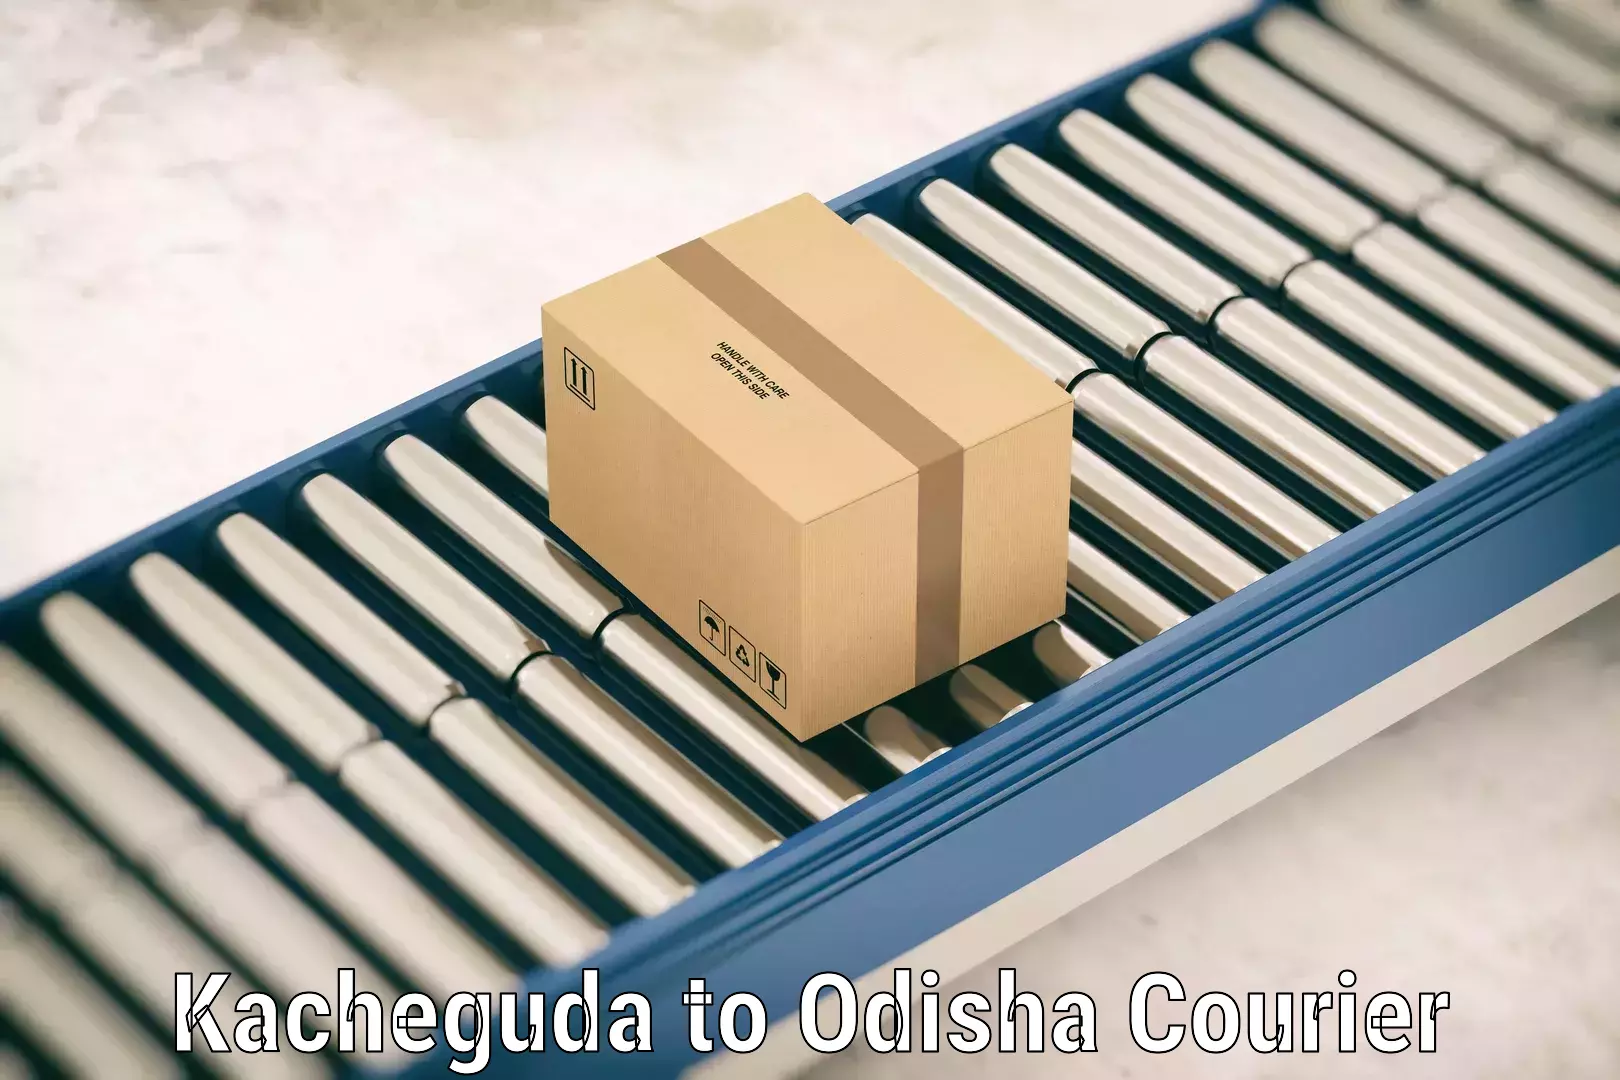 Baggage delivery scheduling Kacheguda to Semiliguda